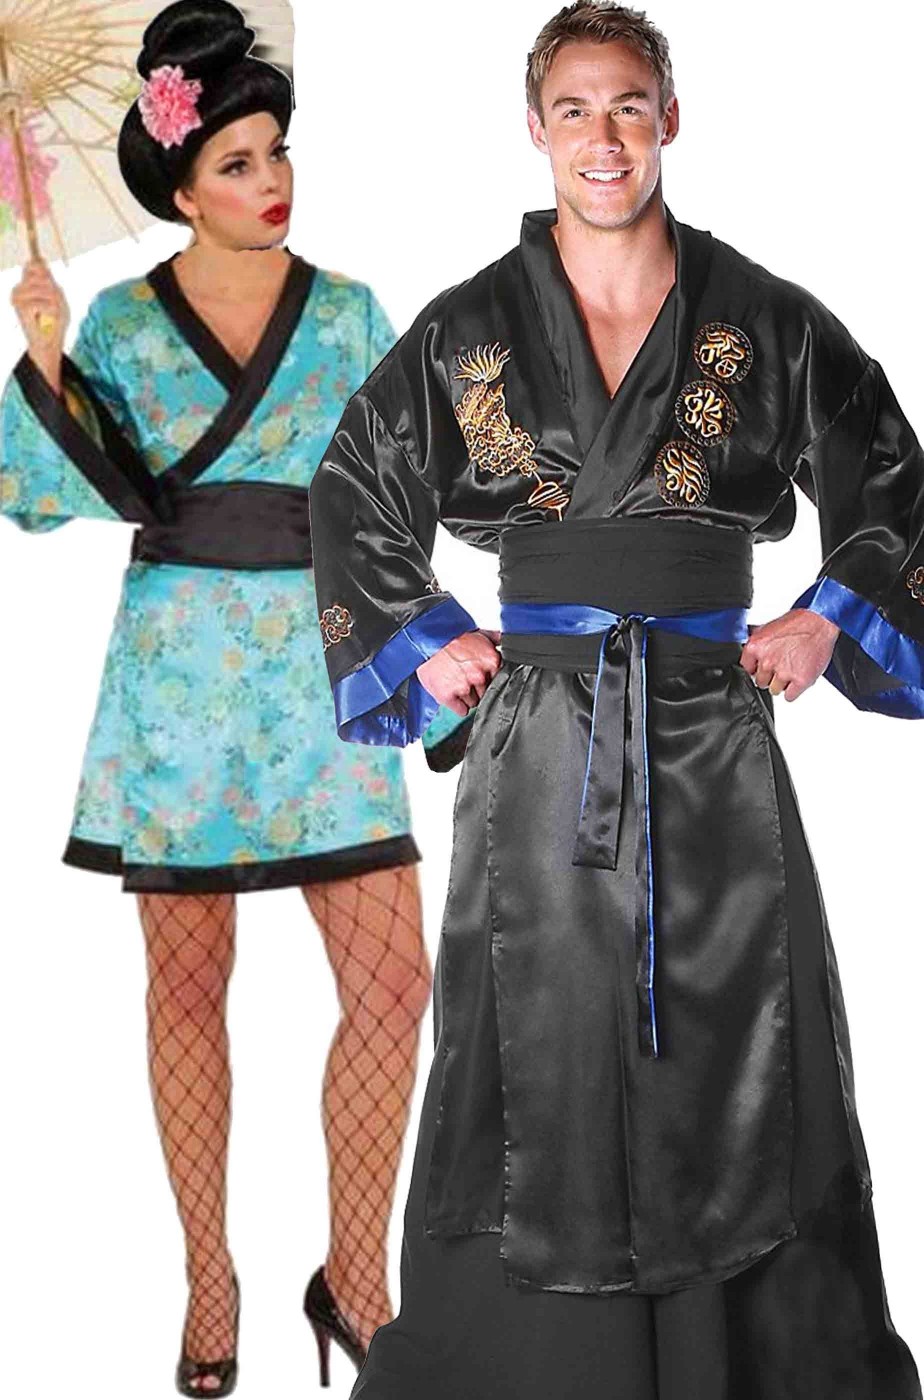 Coppia di costumi di carnevale adulto samurai e geisha giapponesi